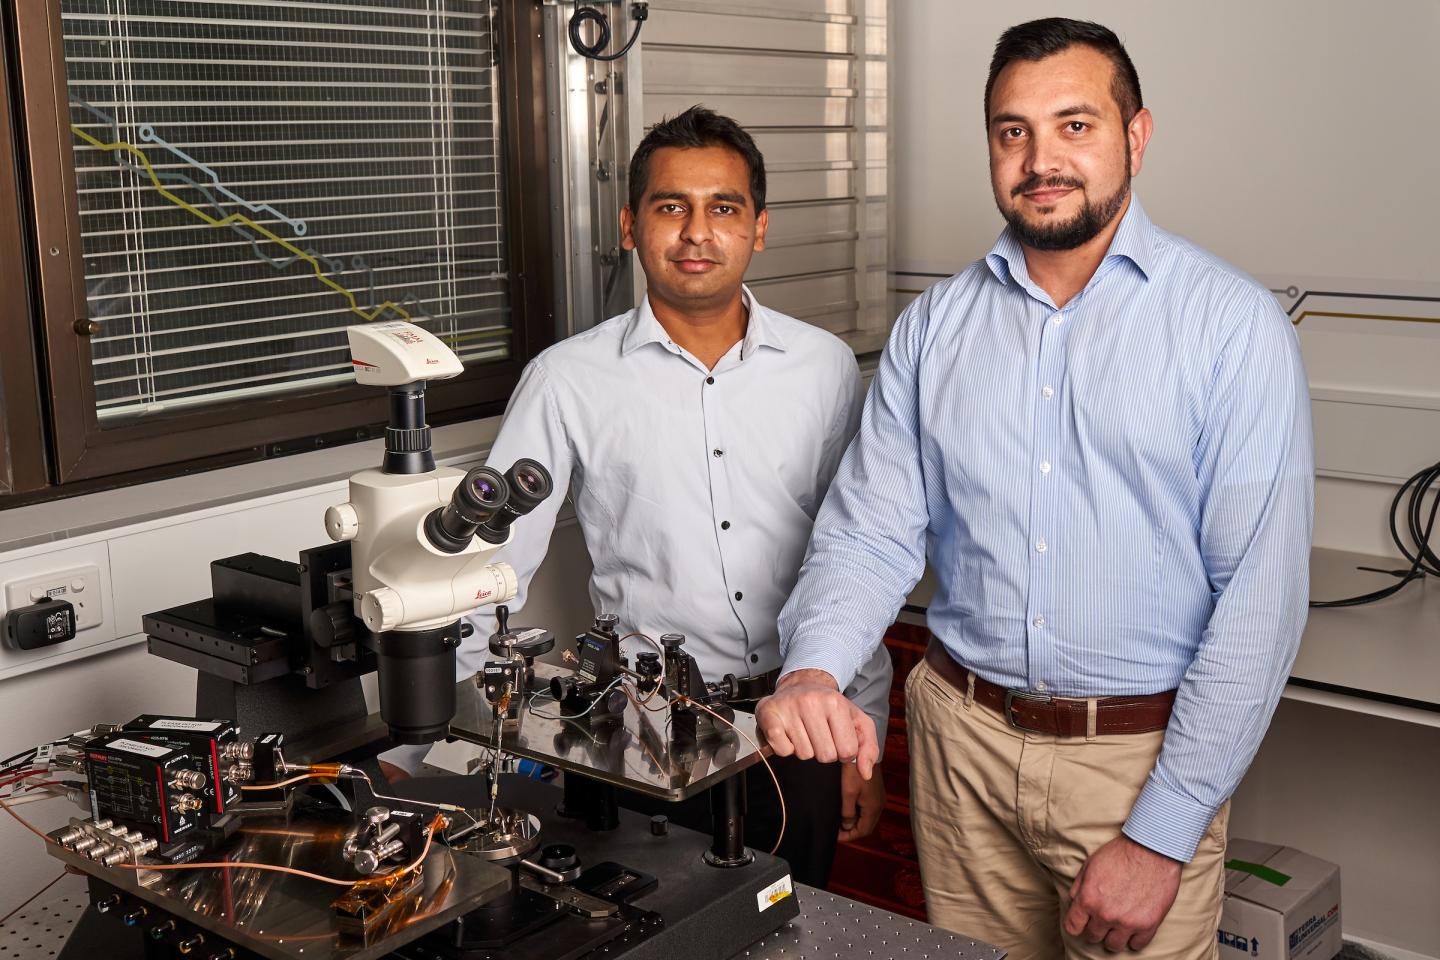 Los protagonistas: de izquierda a derecha: Sumeet Walia y Taimur Ahmed, del Grupo de Investigación de Materiales Funcionales y Microsistemas. Foto: Universidad RMIT.